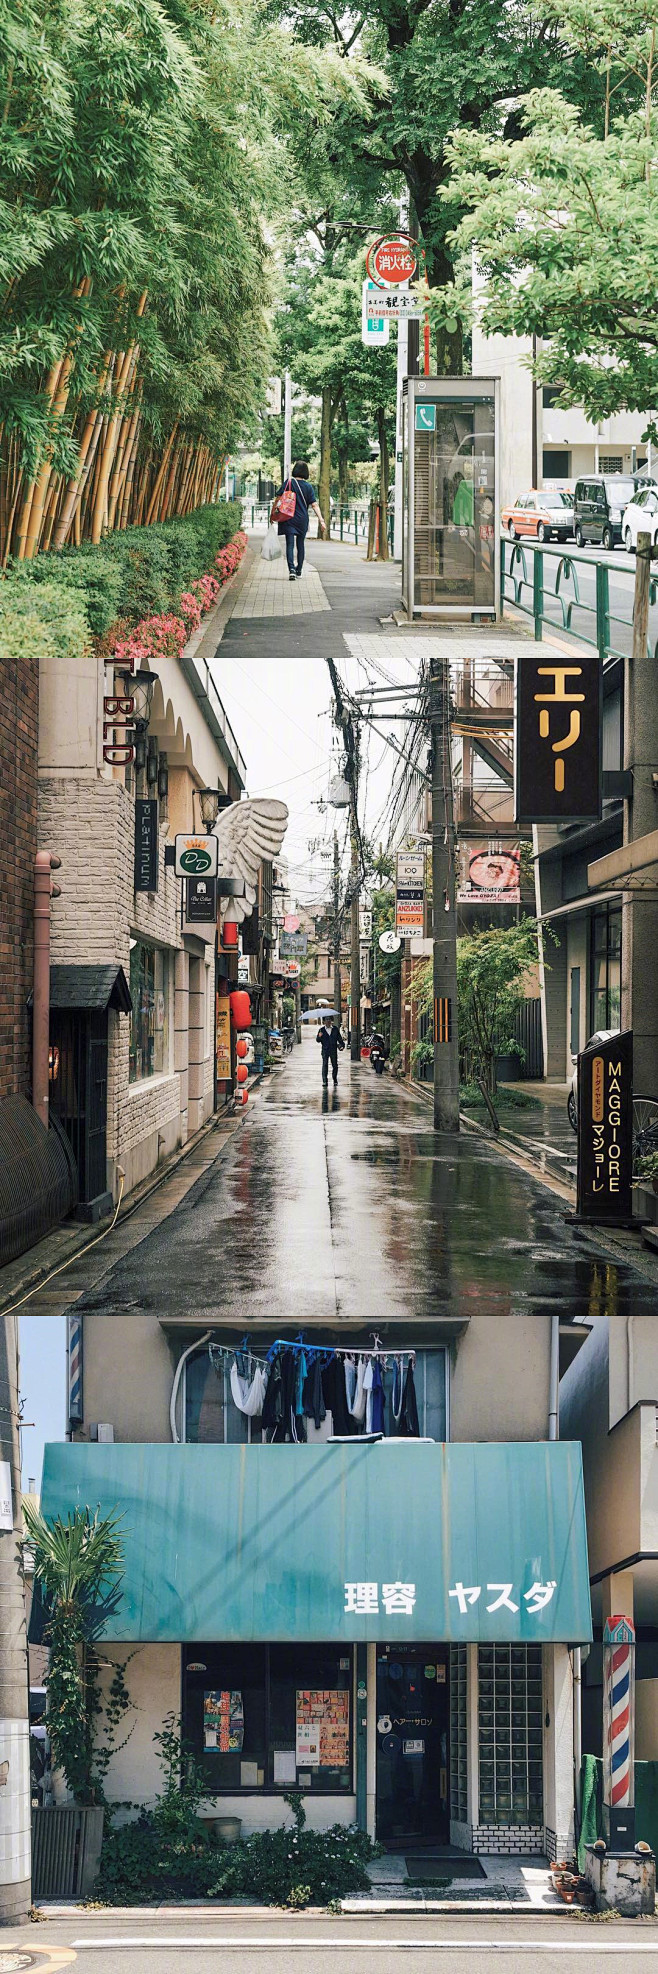 日本街道街景城市小镇乡村日系摄影小清新景色